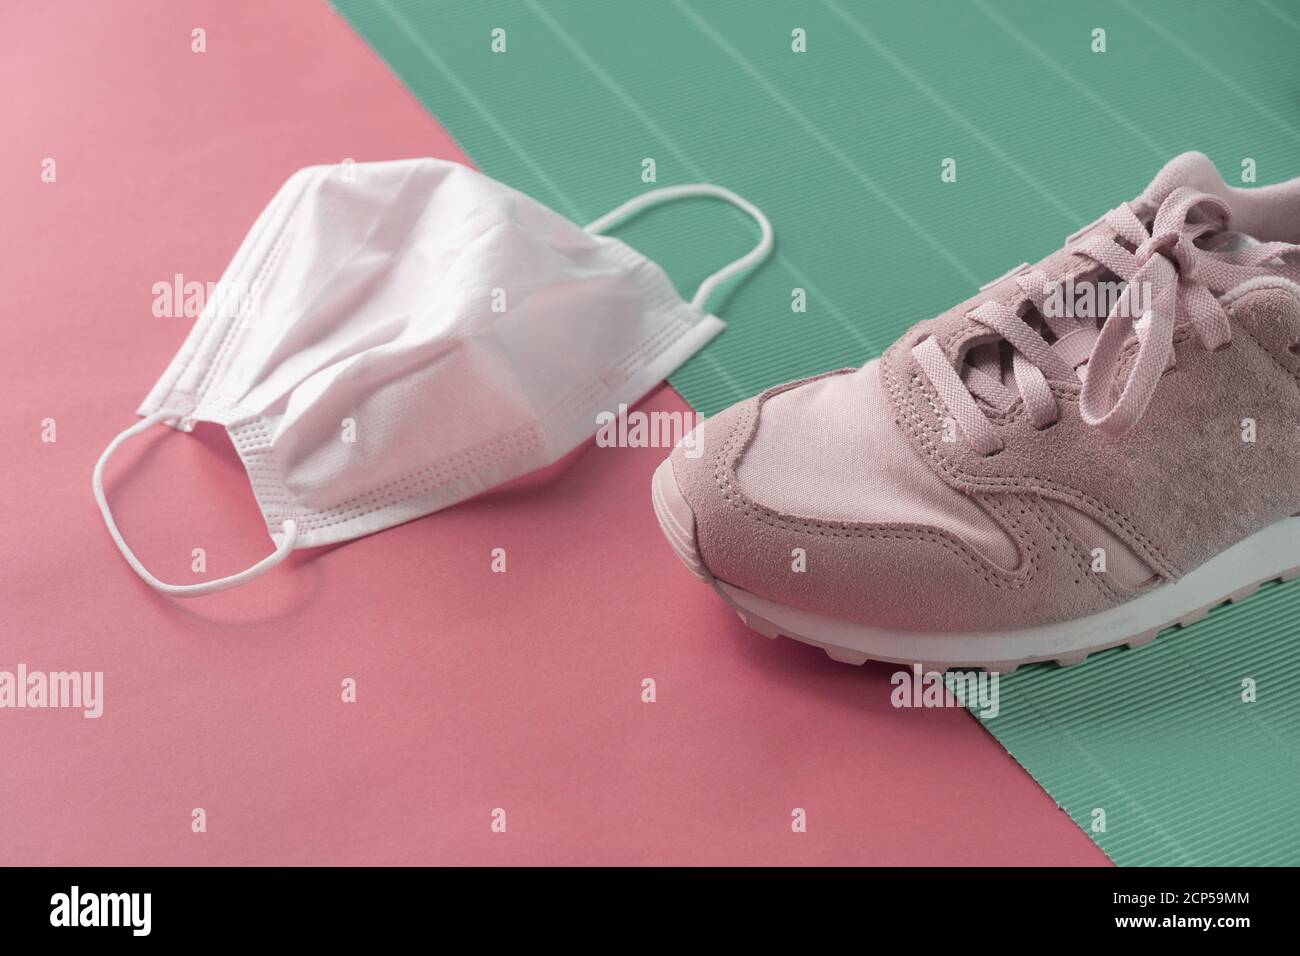 chaussure de sport pour baskets lady avec masque de santé blanc pour protection covid 19 sur fond bleu pastel rose Banque D'Images